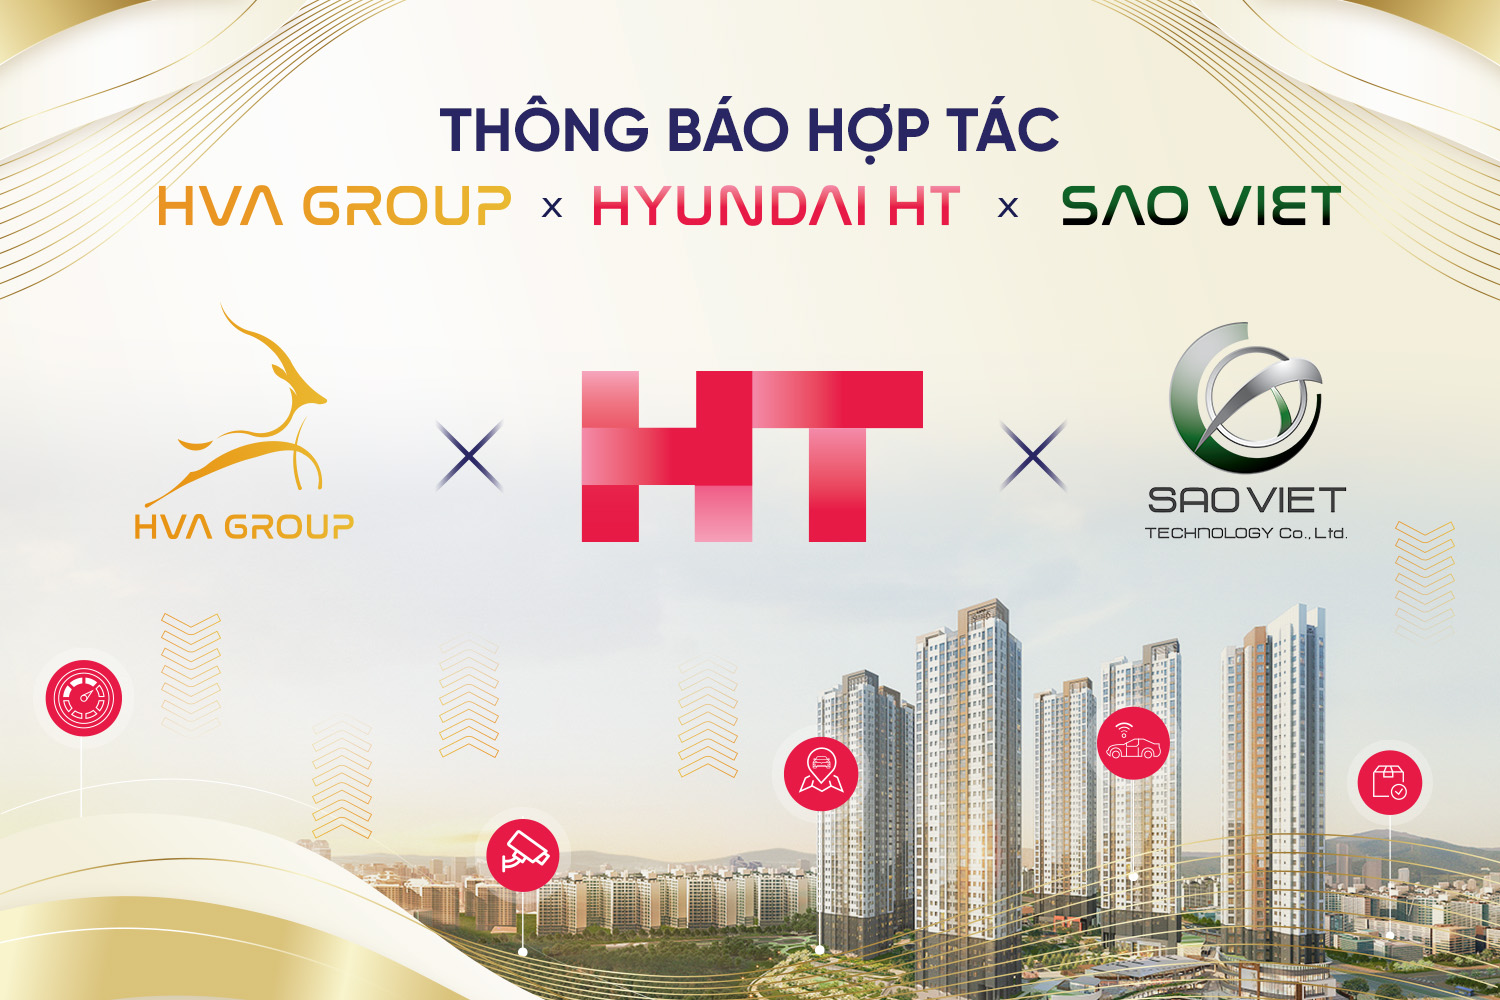 THONG_BAO_HOP_TAC_HYUNDAI_HT-2